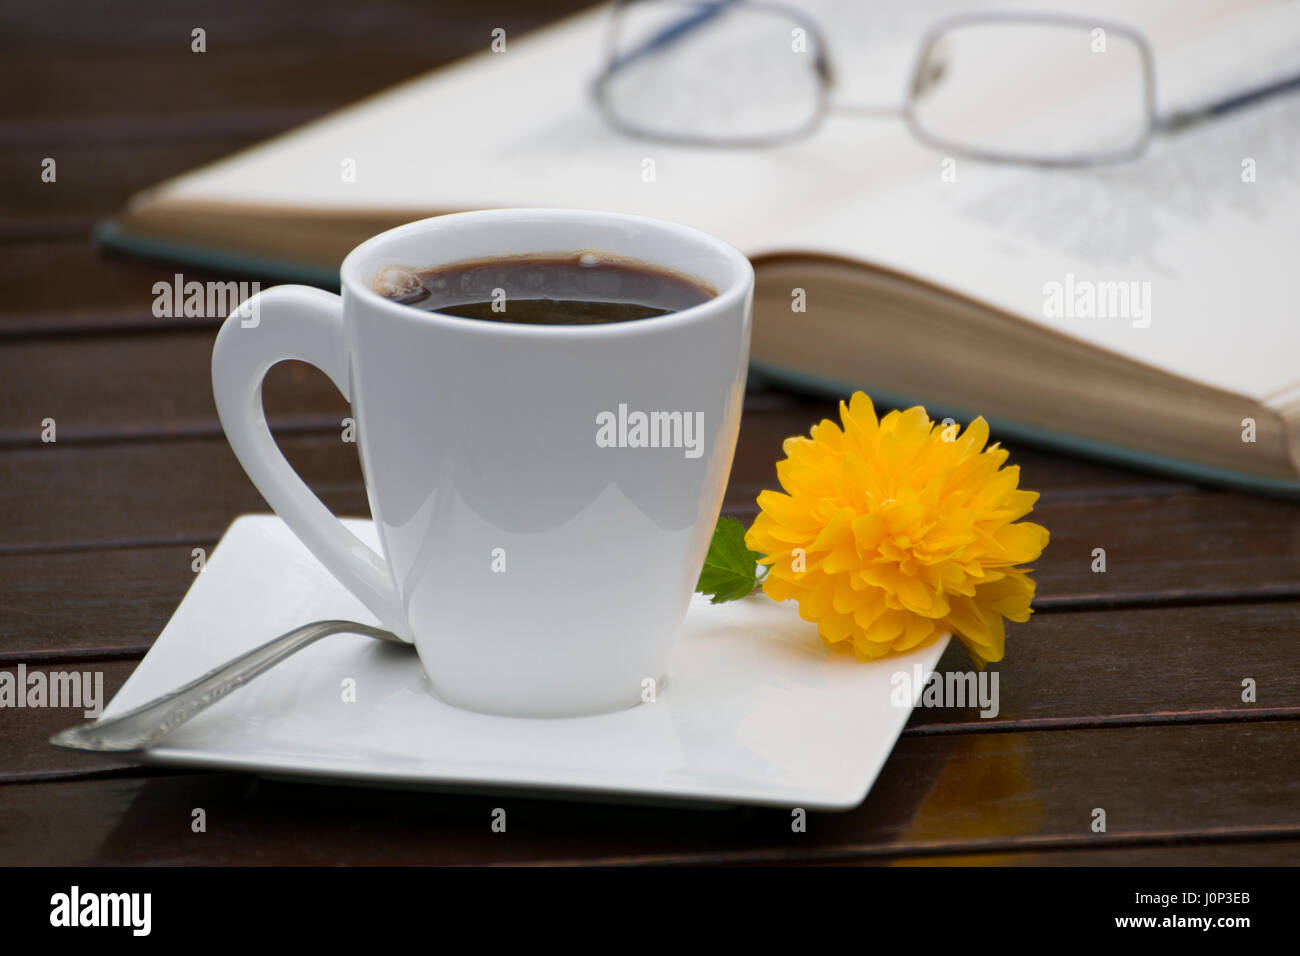 Una tazza di caffè con un giallo fiore piccolo e un cucchiaino Sul piattino, accanto a un libro aperto e occhiali su una tavola di legno, all'esterno. Foto Stock